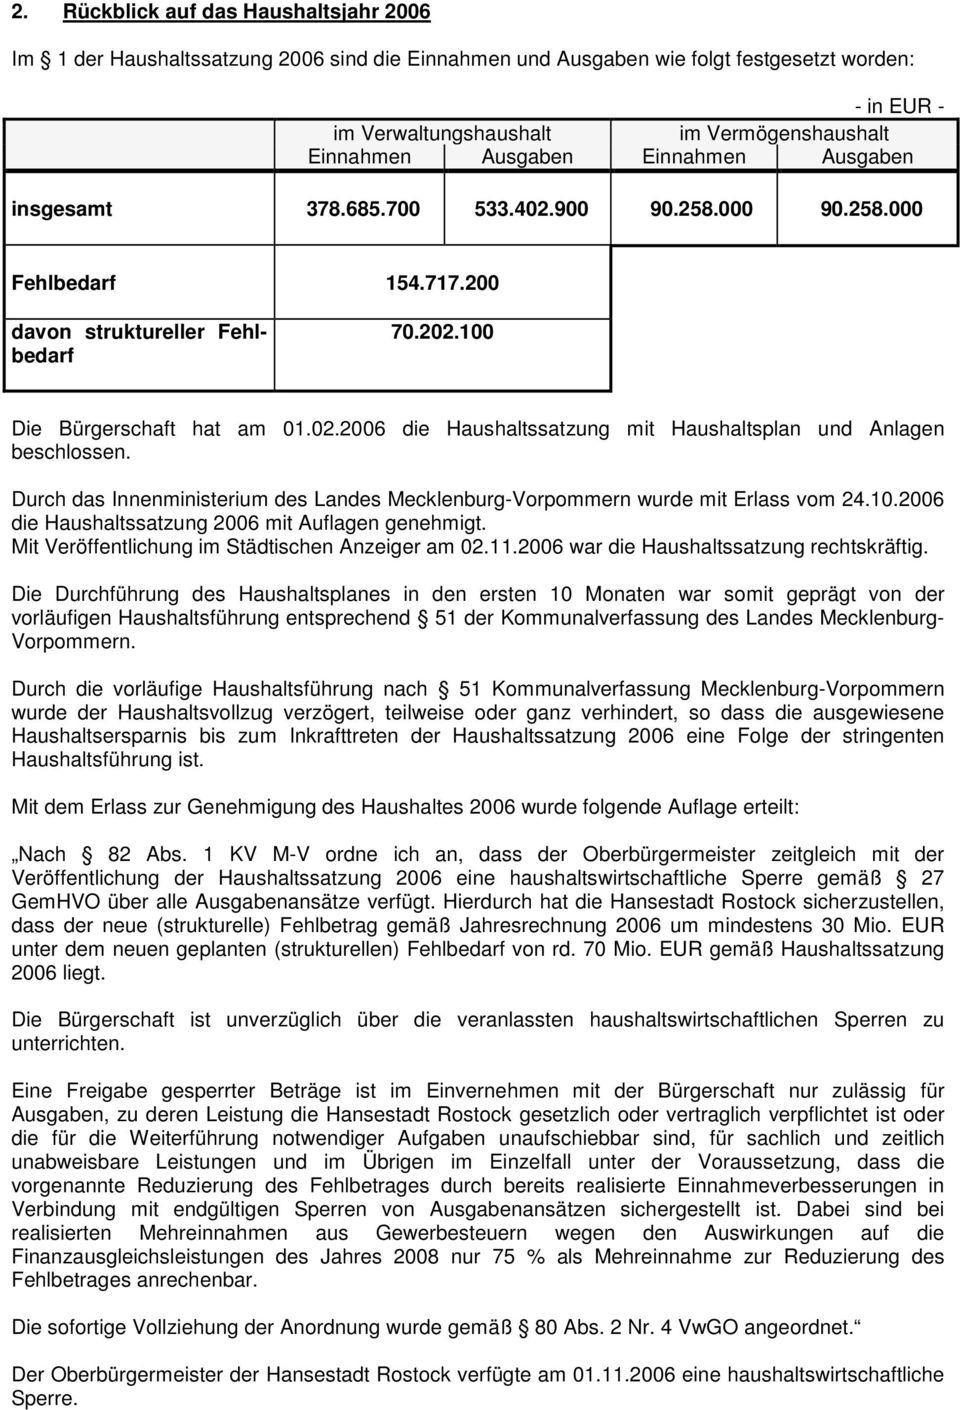 Durch das Innenministerium des Landes Mecklenburg-Vorpommern wurde mit Erlass vom 24.10.2006 die Haushaltssatzung 2006 mit Auflagen genehmigt. Mit Veröffentlichung im Städtischen Anzeiger am 02.11.